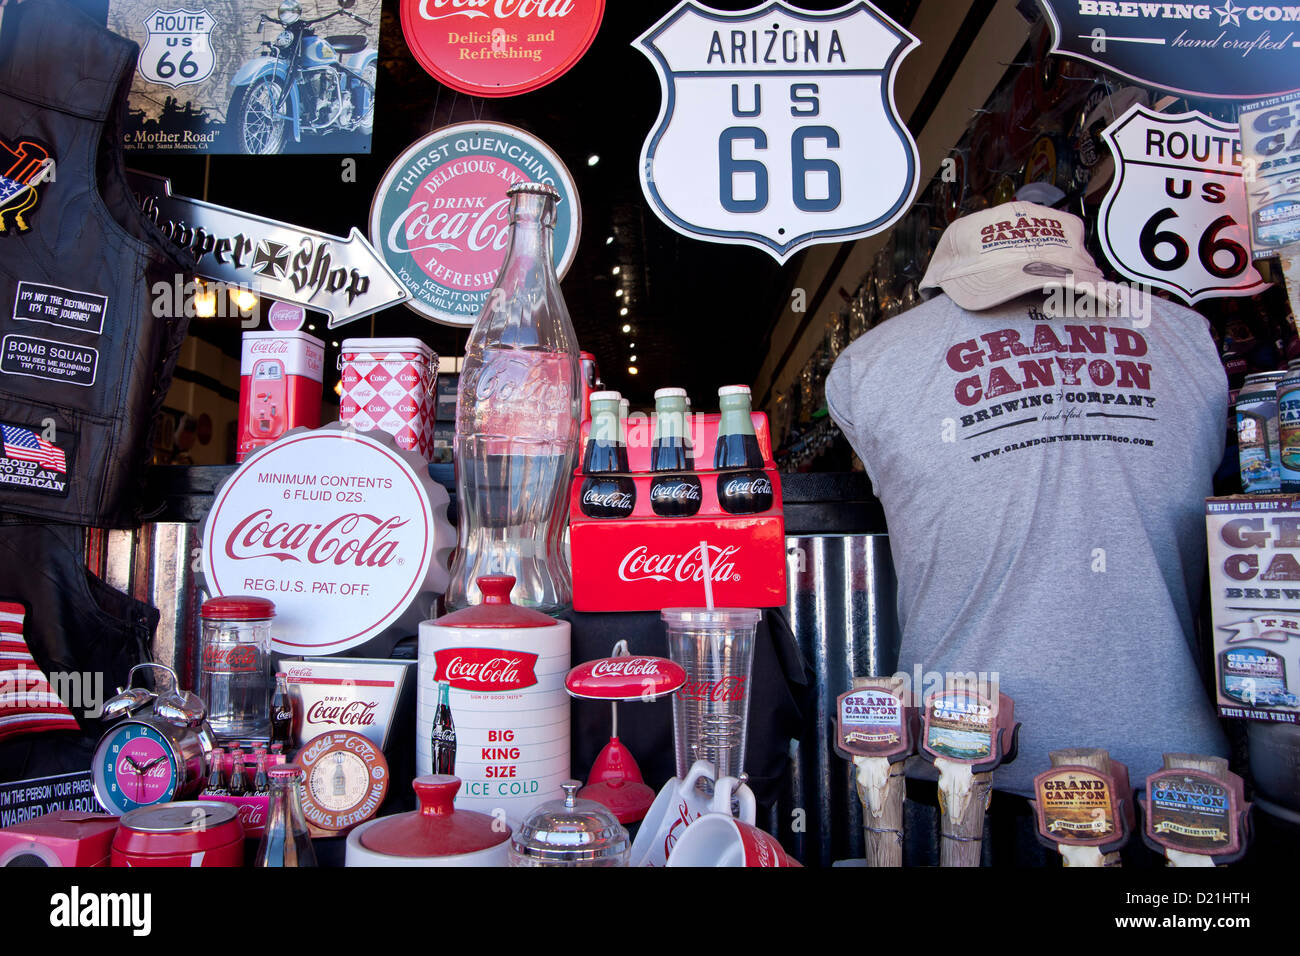 Magasin de souvenirs avec Coca Cola et marchandises Route 66, Kingman, Arizona, États-Unis d'Amérique, USA Banque D'Images